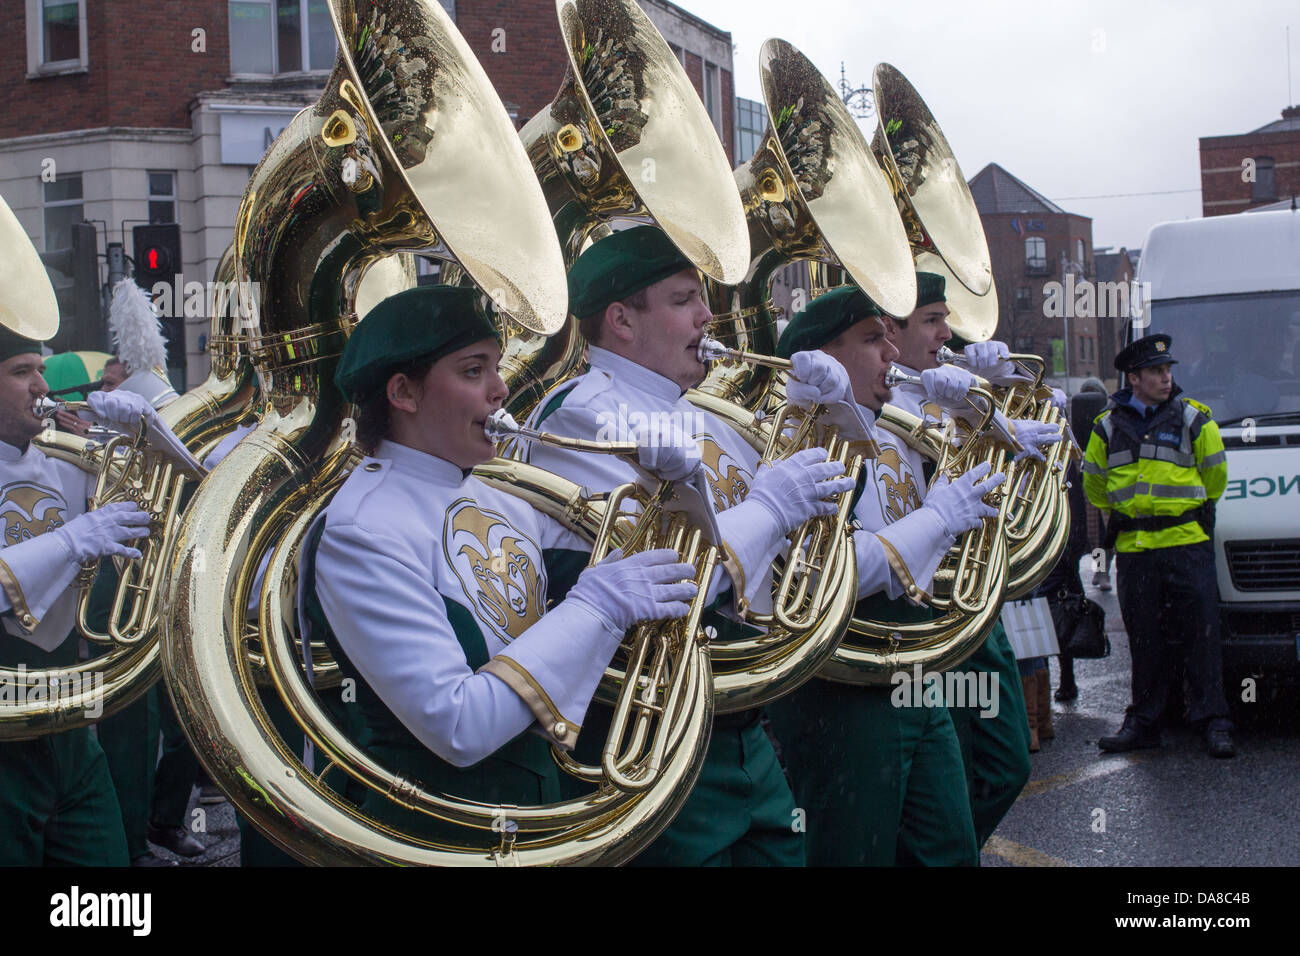 St. Patrick's Parade, Dublin, Ireland, 17th of March 2013. Stock Photo